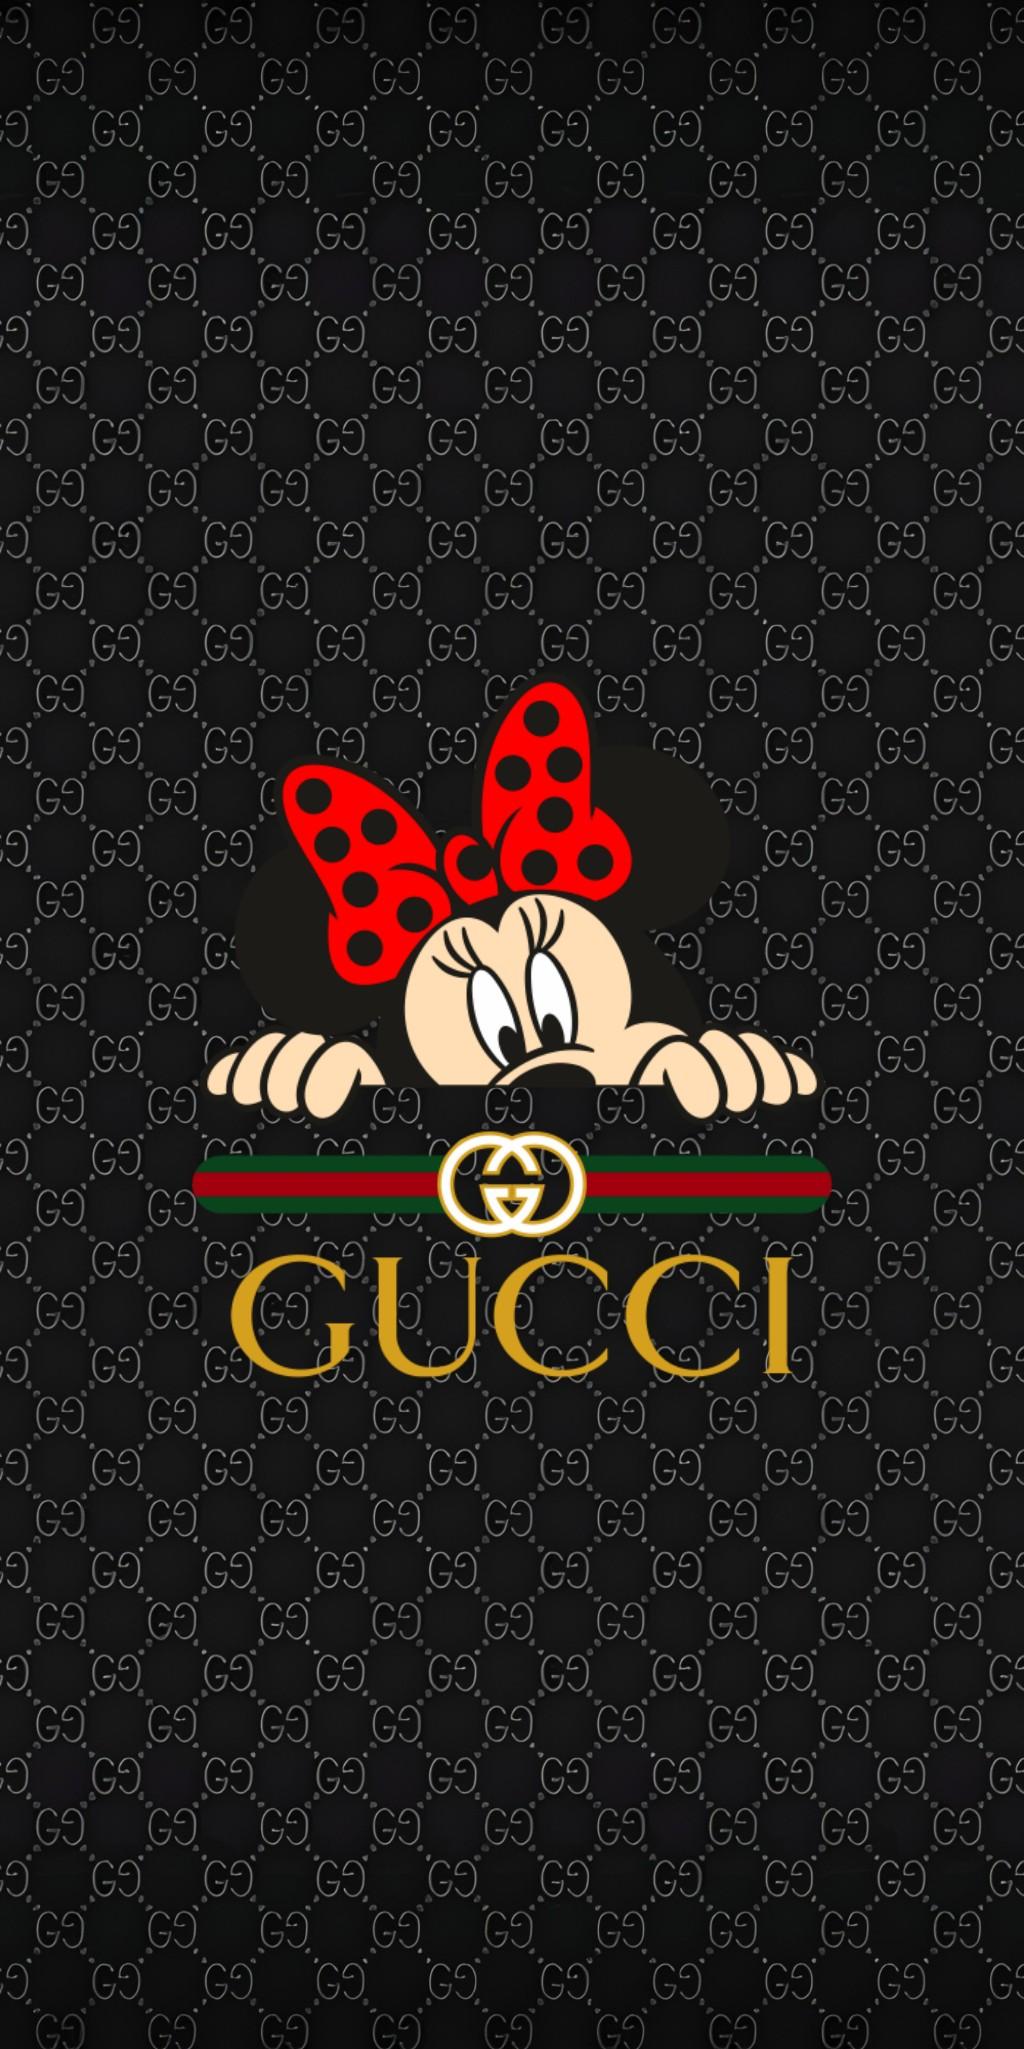 Hình Ảnh Gucci Nền Đen Đẹp Sang Chảnh Bậc Nhất  TH Điện Biên Đông